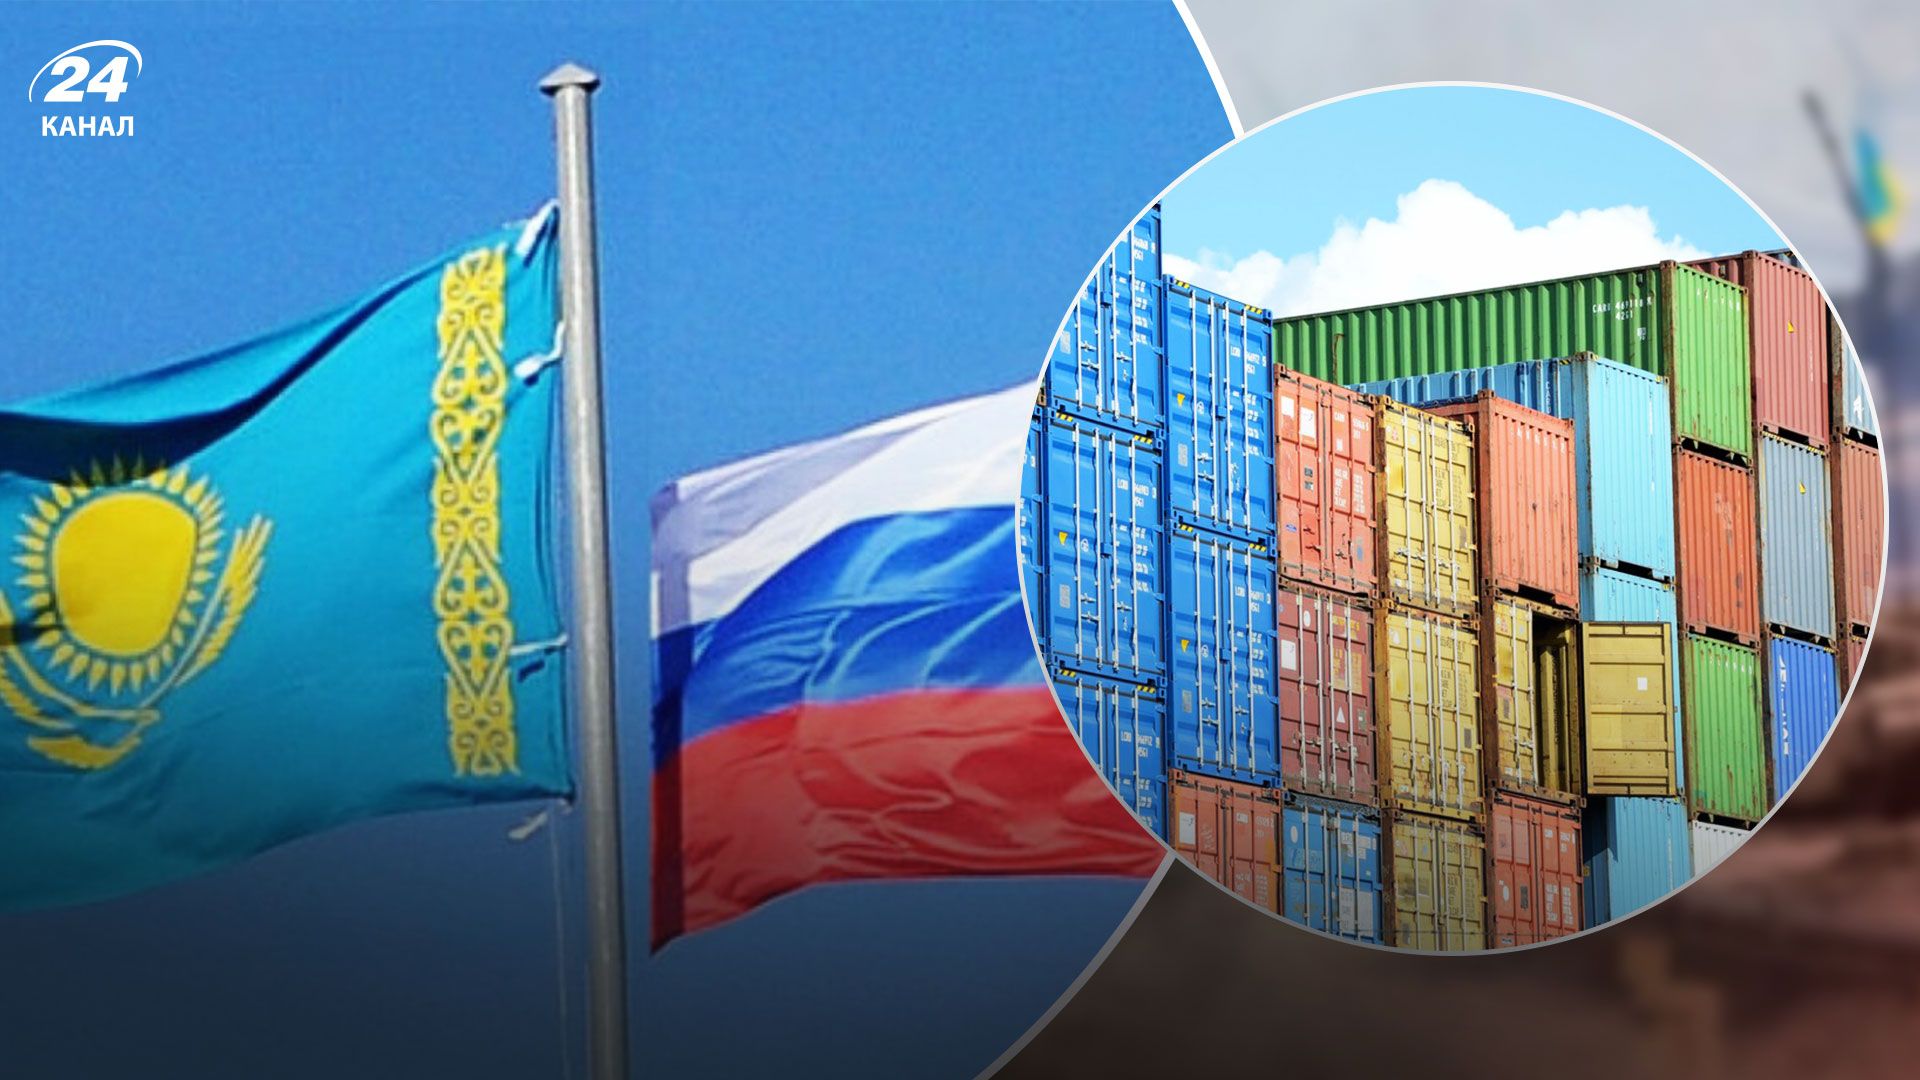 Які відносини між Казахстаном та Росією - агресорці важче обходити санкції Заходу